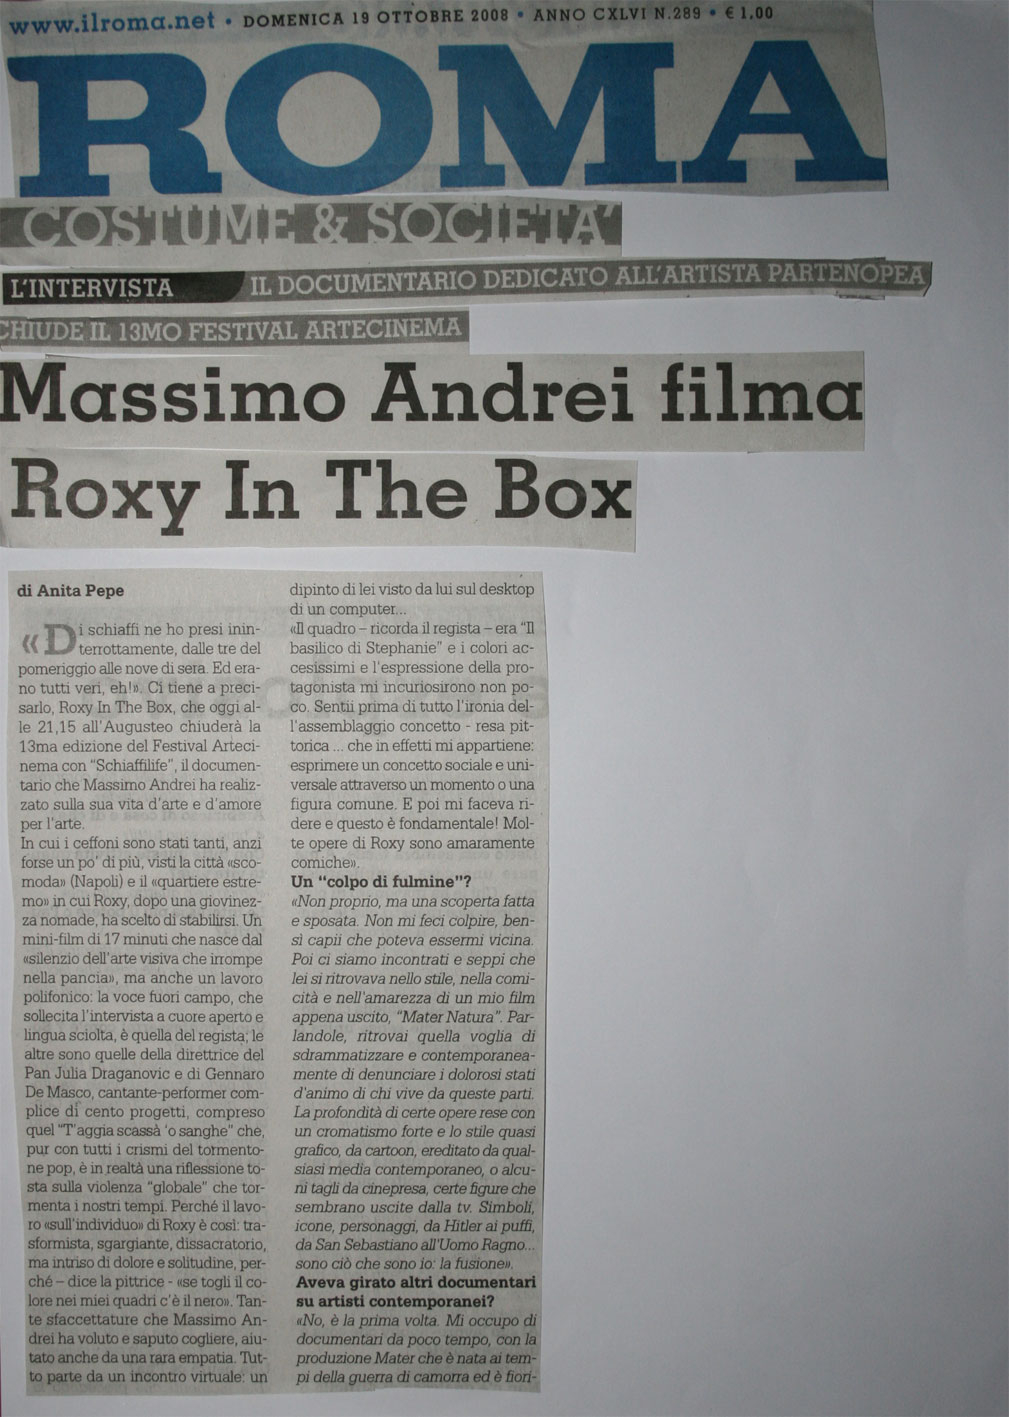 Il Roma - Massimo Andrei filma Roxy in the Box